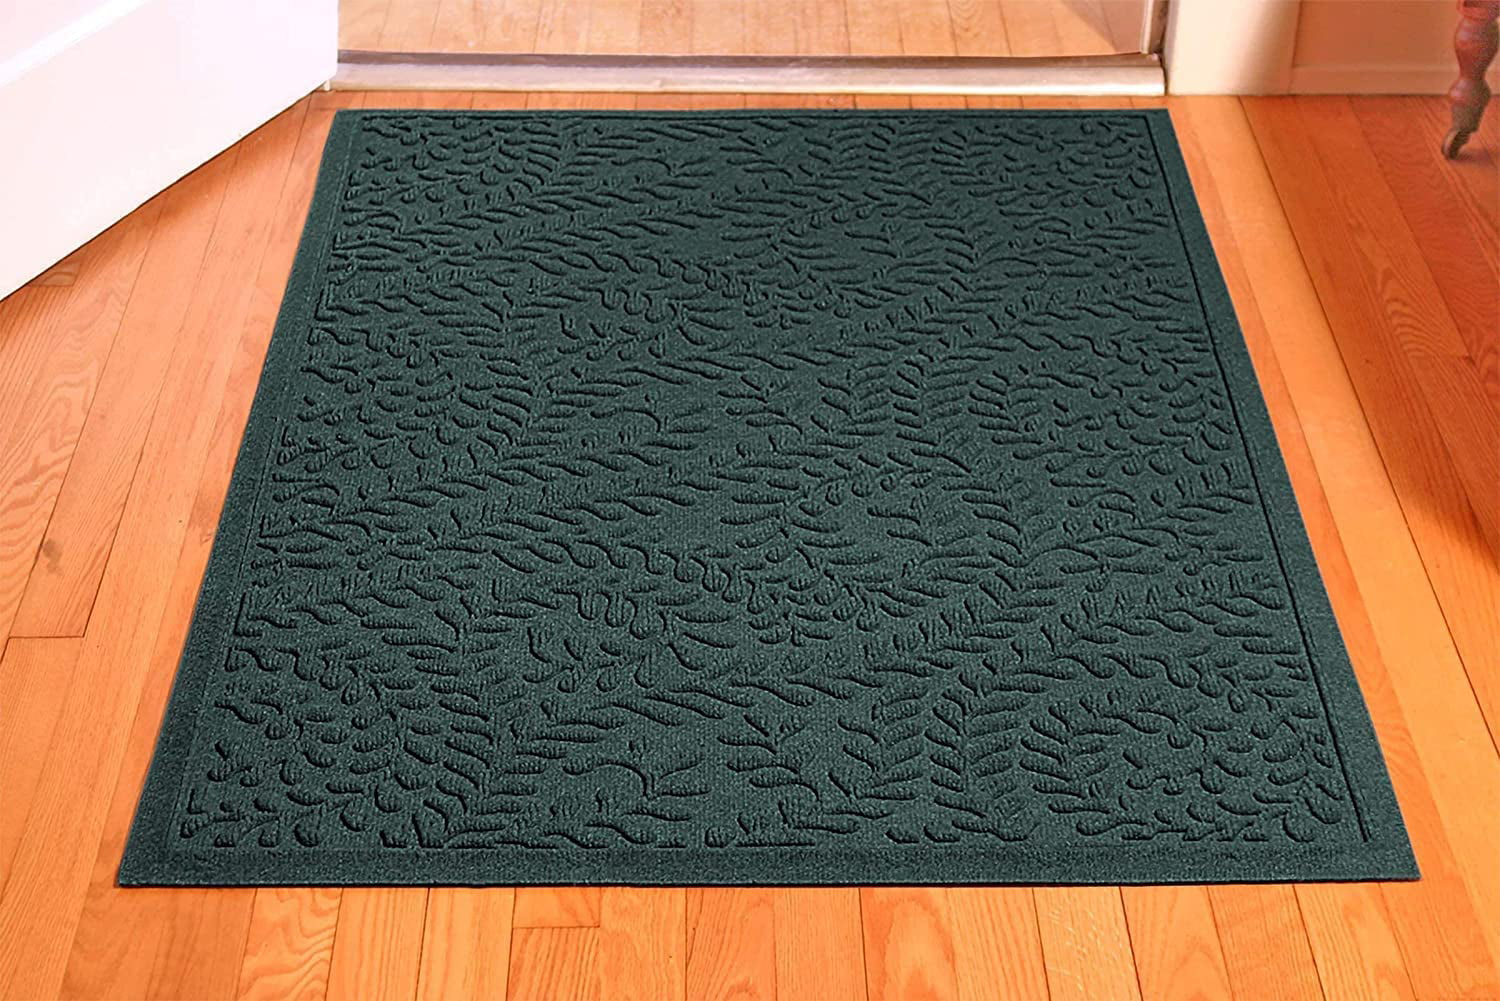 Bungalow Flooring Waterhog Runner Door Mat, 2 x 5 Made in USA, Durable and Decorative Floor Covering, Skid Resistant, Indooroutd